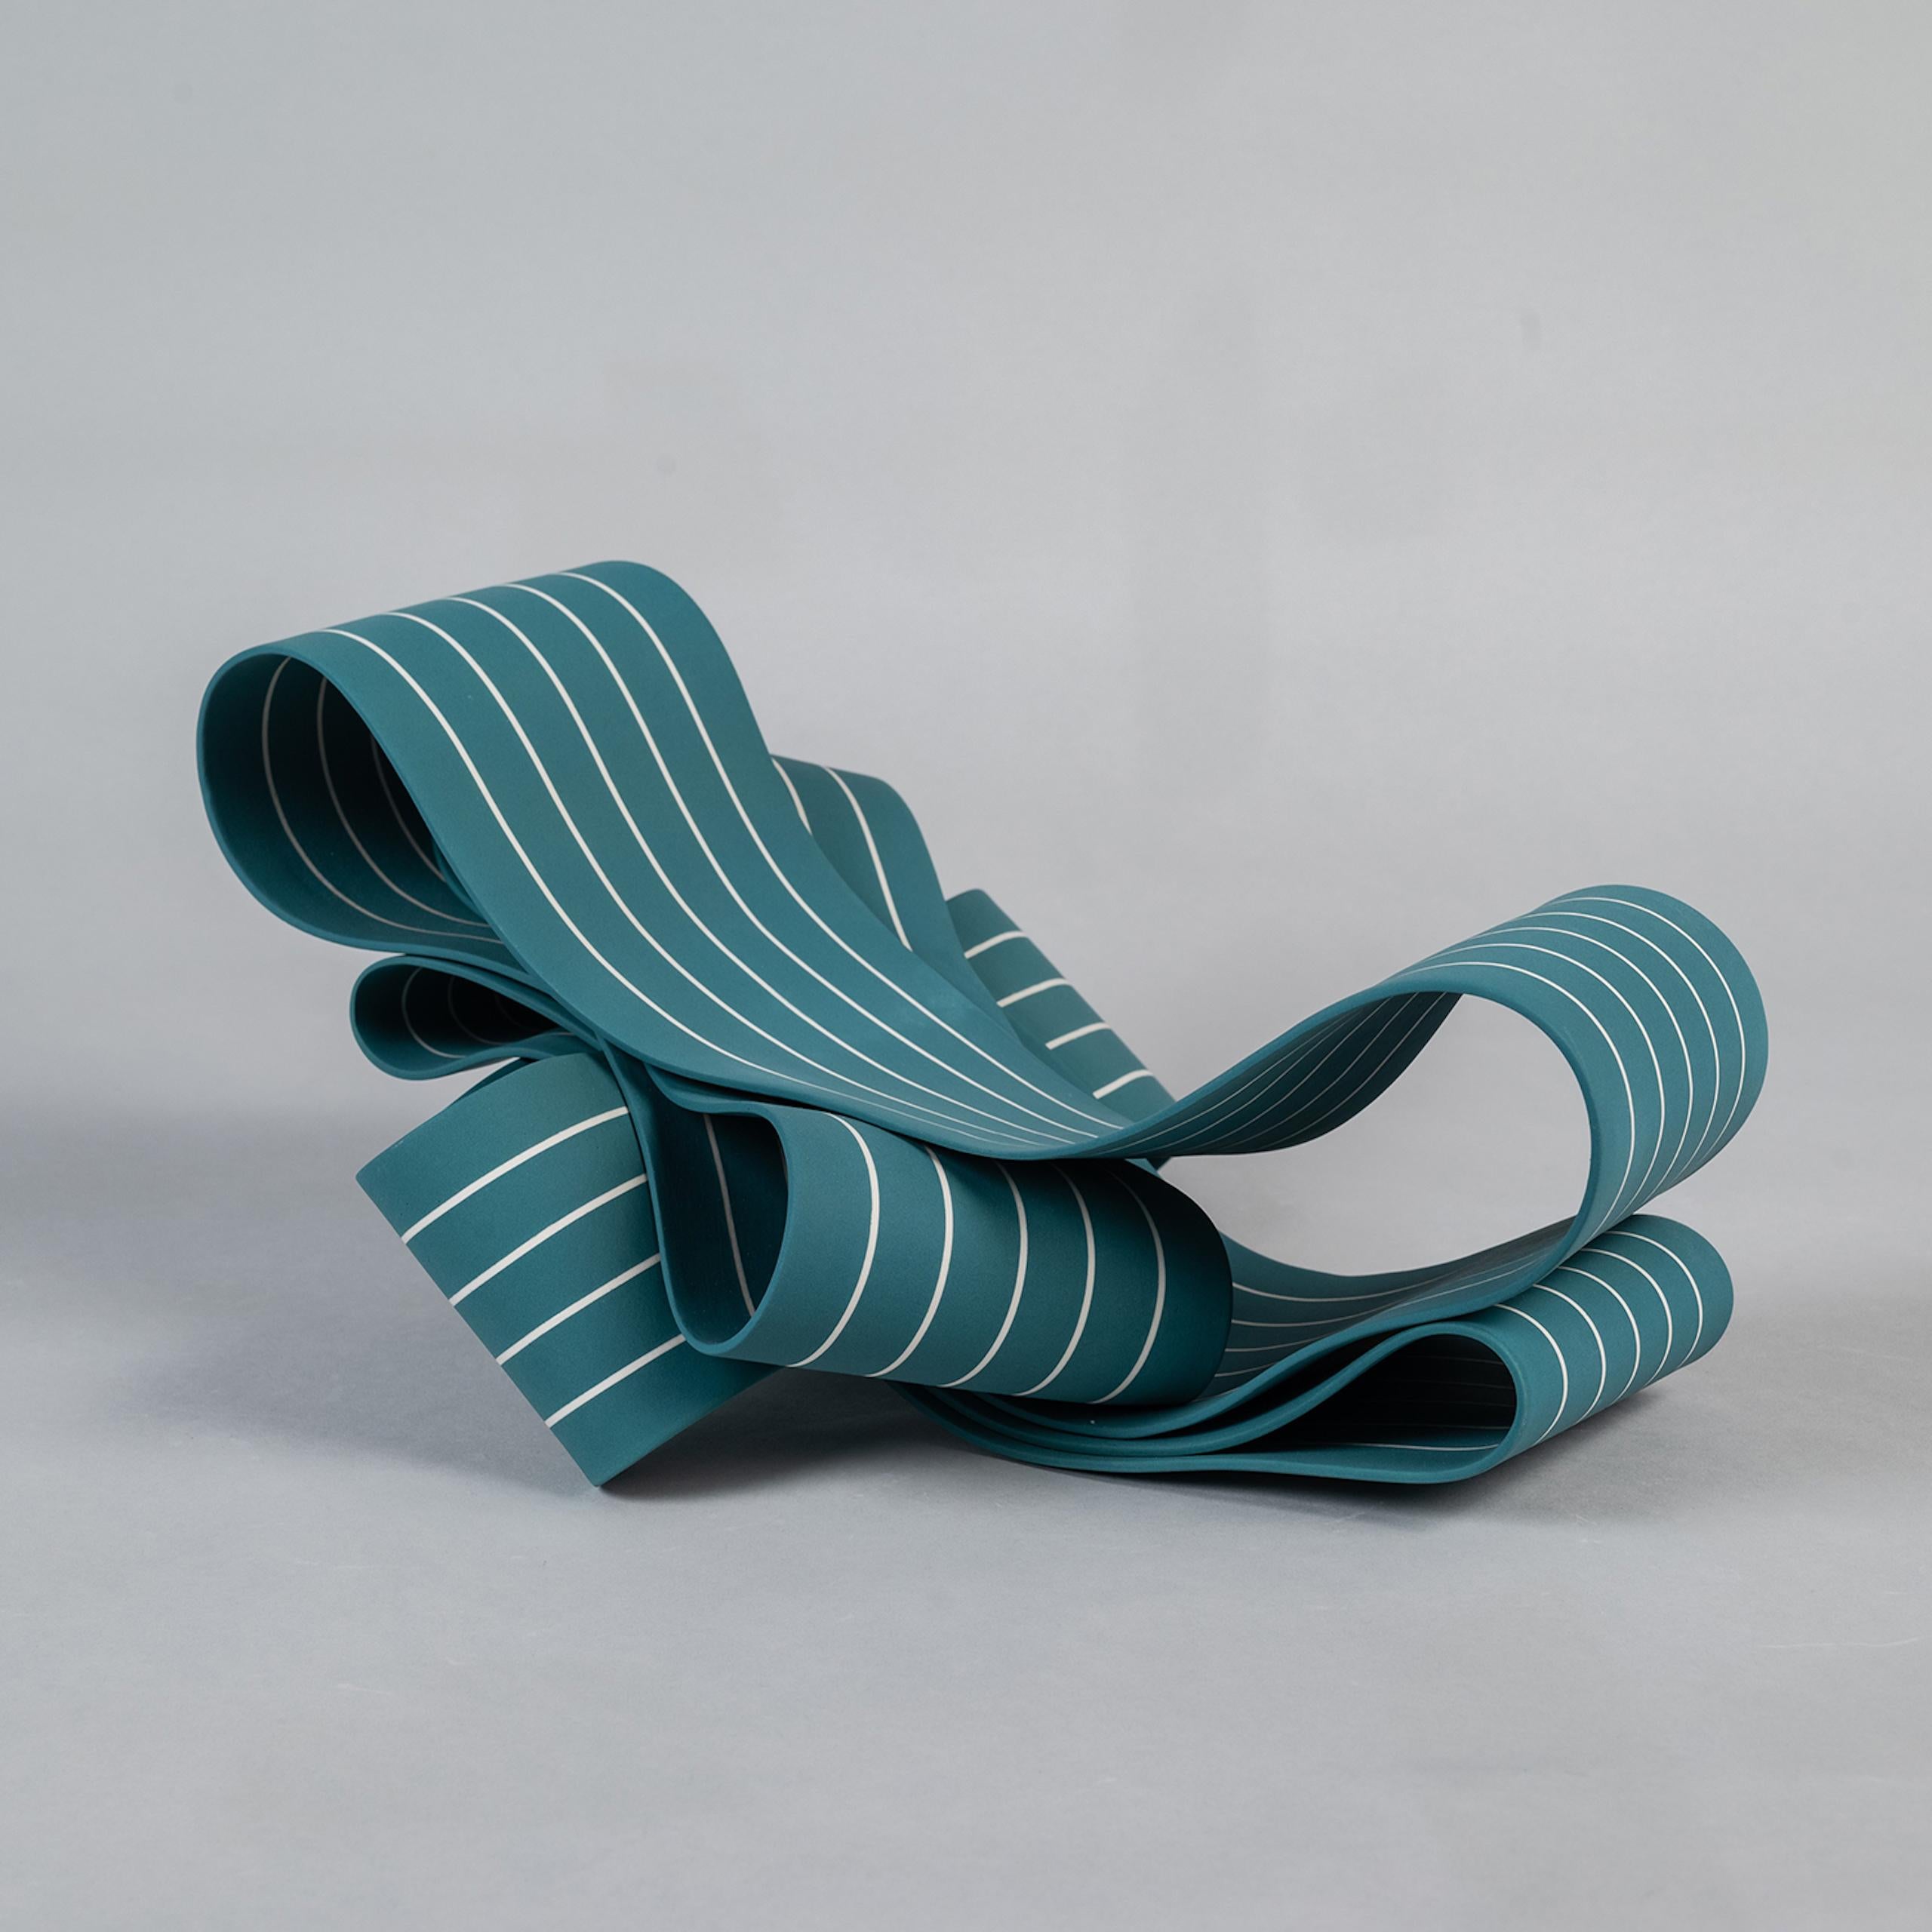 Entrapped 2 by Simcha Even-Chen - Porcelain sculpture, blue, motion For Sale 2